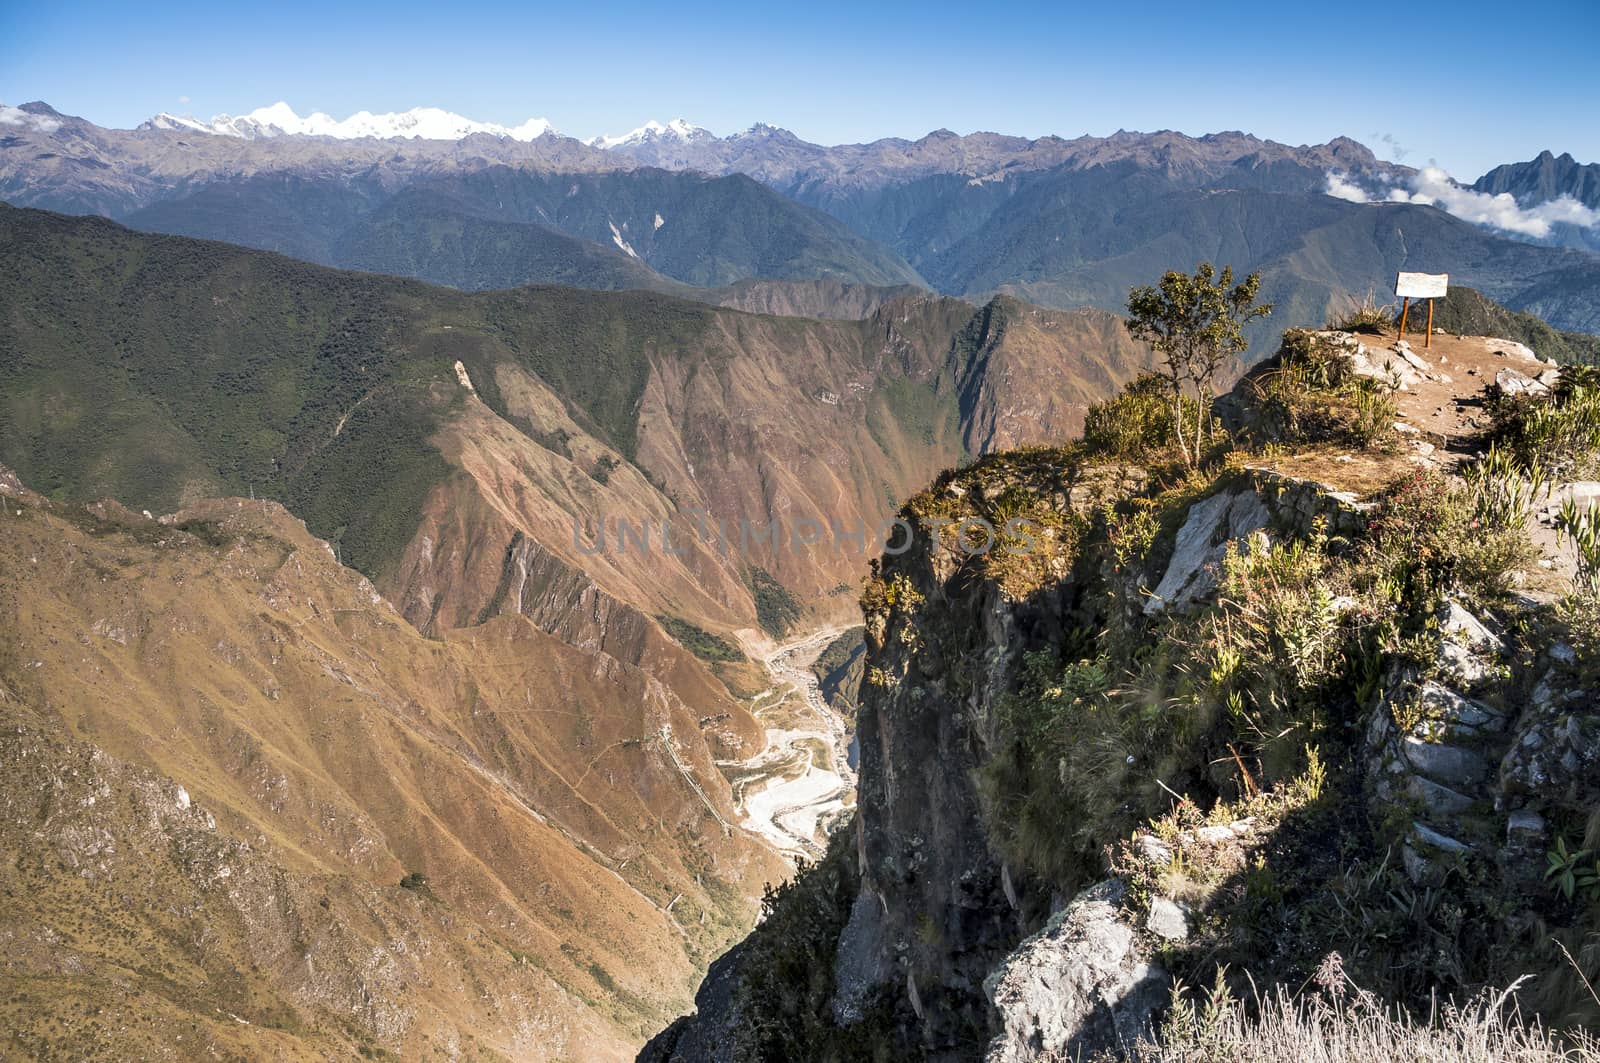 View atop of Machu Picchu Mountain peak by rigamondis